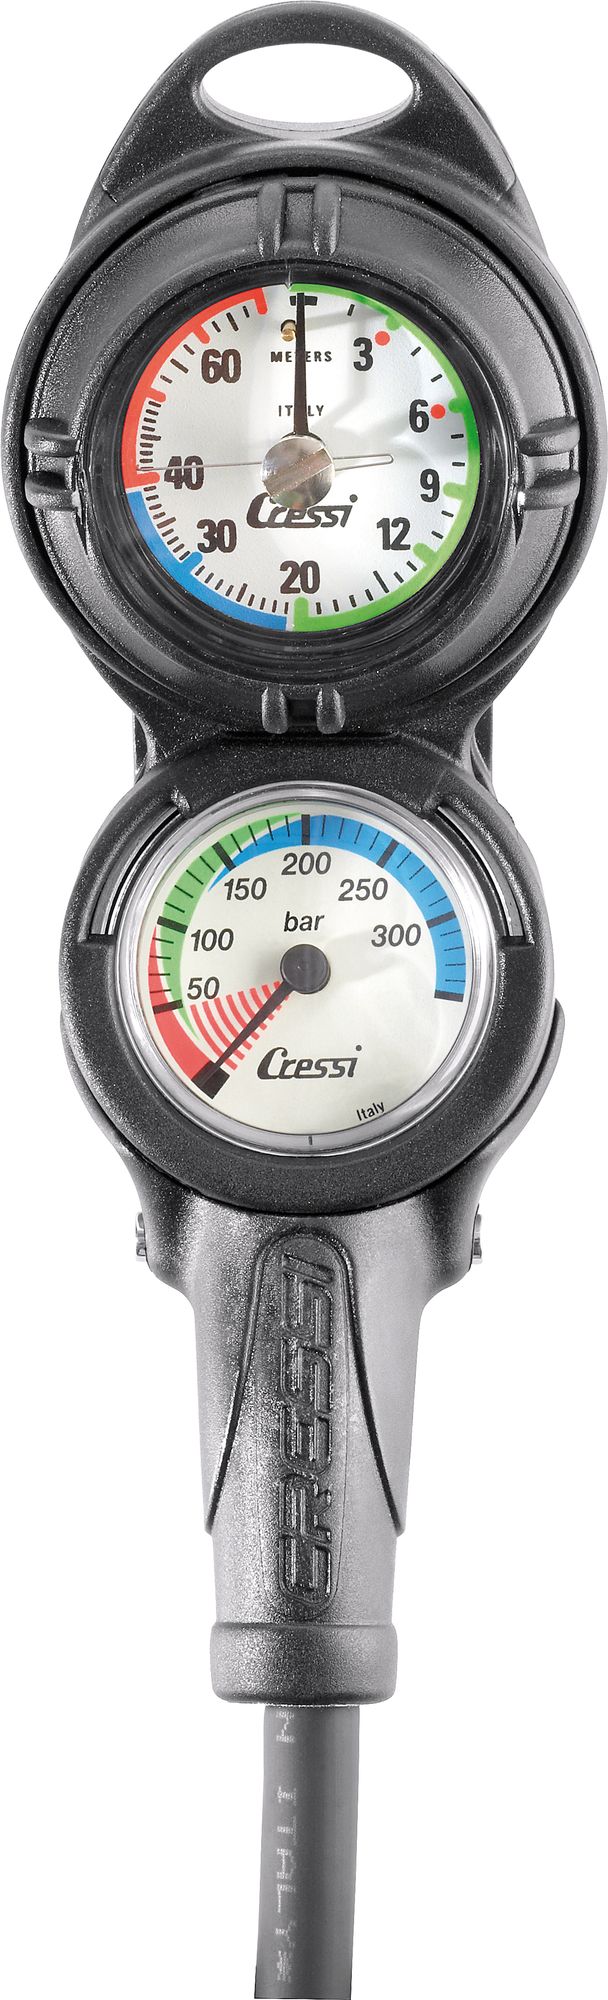 Cressi Pd2 Console console immersion subacque manometro pressione profondi scuba diving gauge pressure + depth console analogic